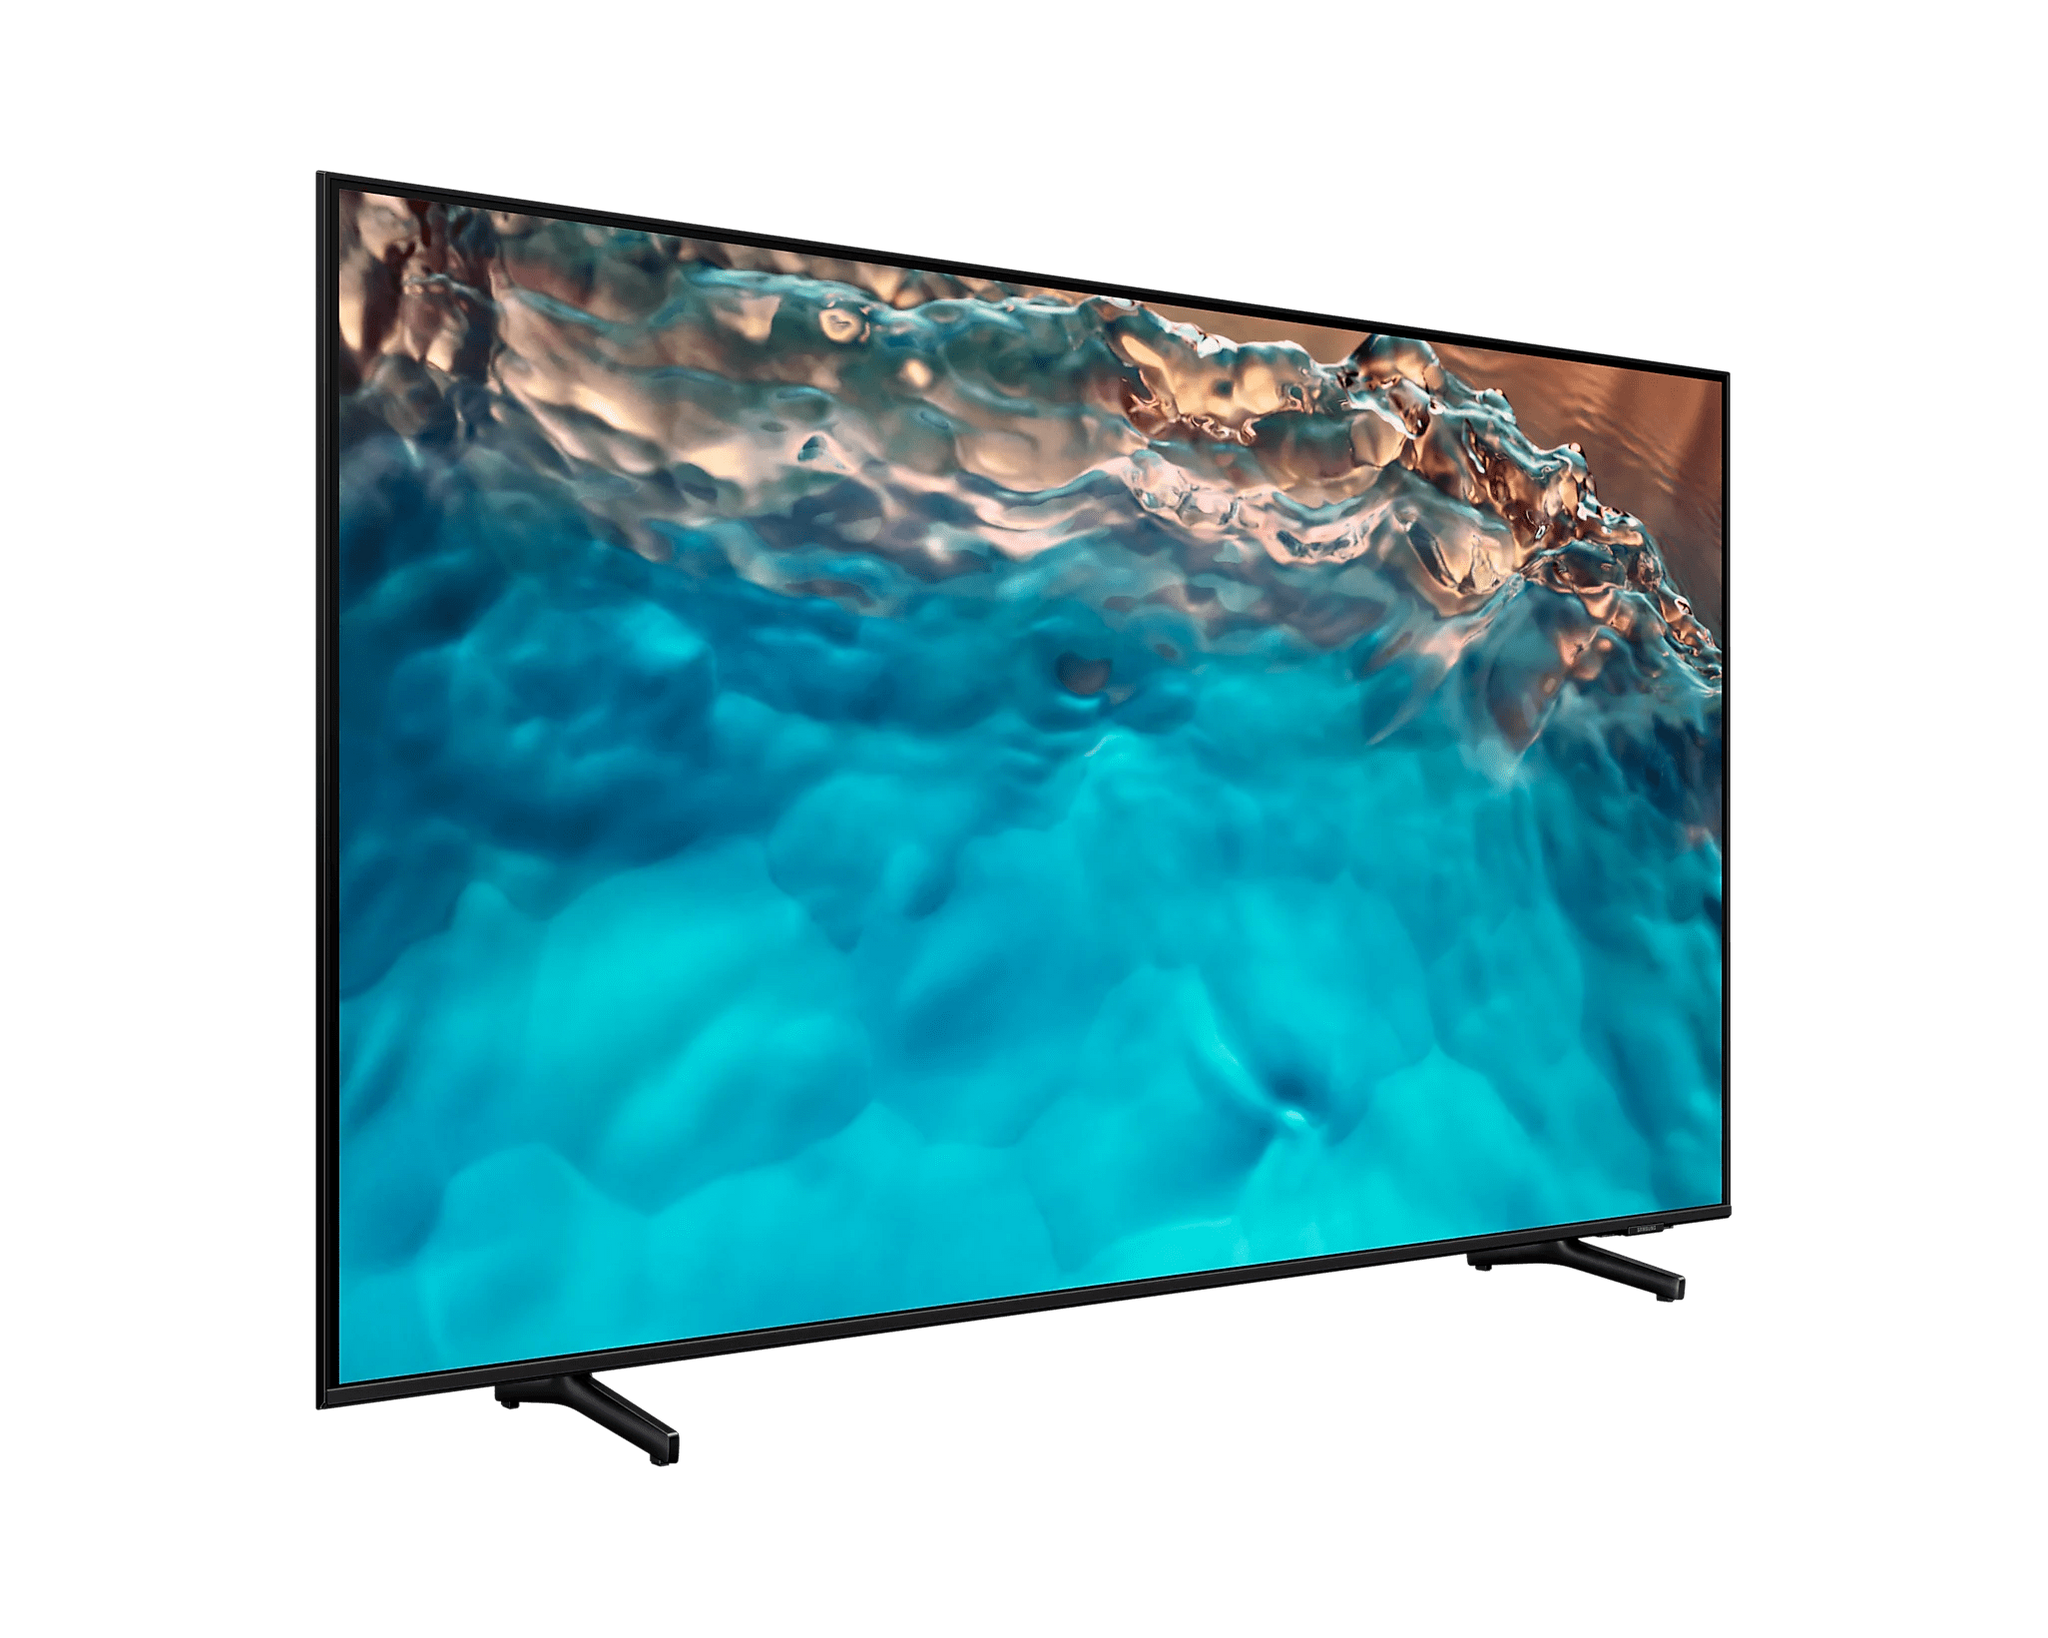 Tv Samsung de 65 pulgadas QLED slin 4K ultra HD curvo smart tv